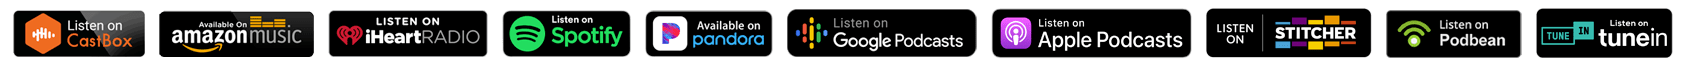 Podcast Line Logos